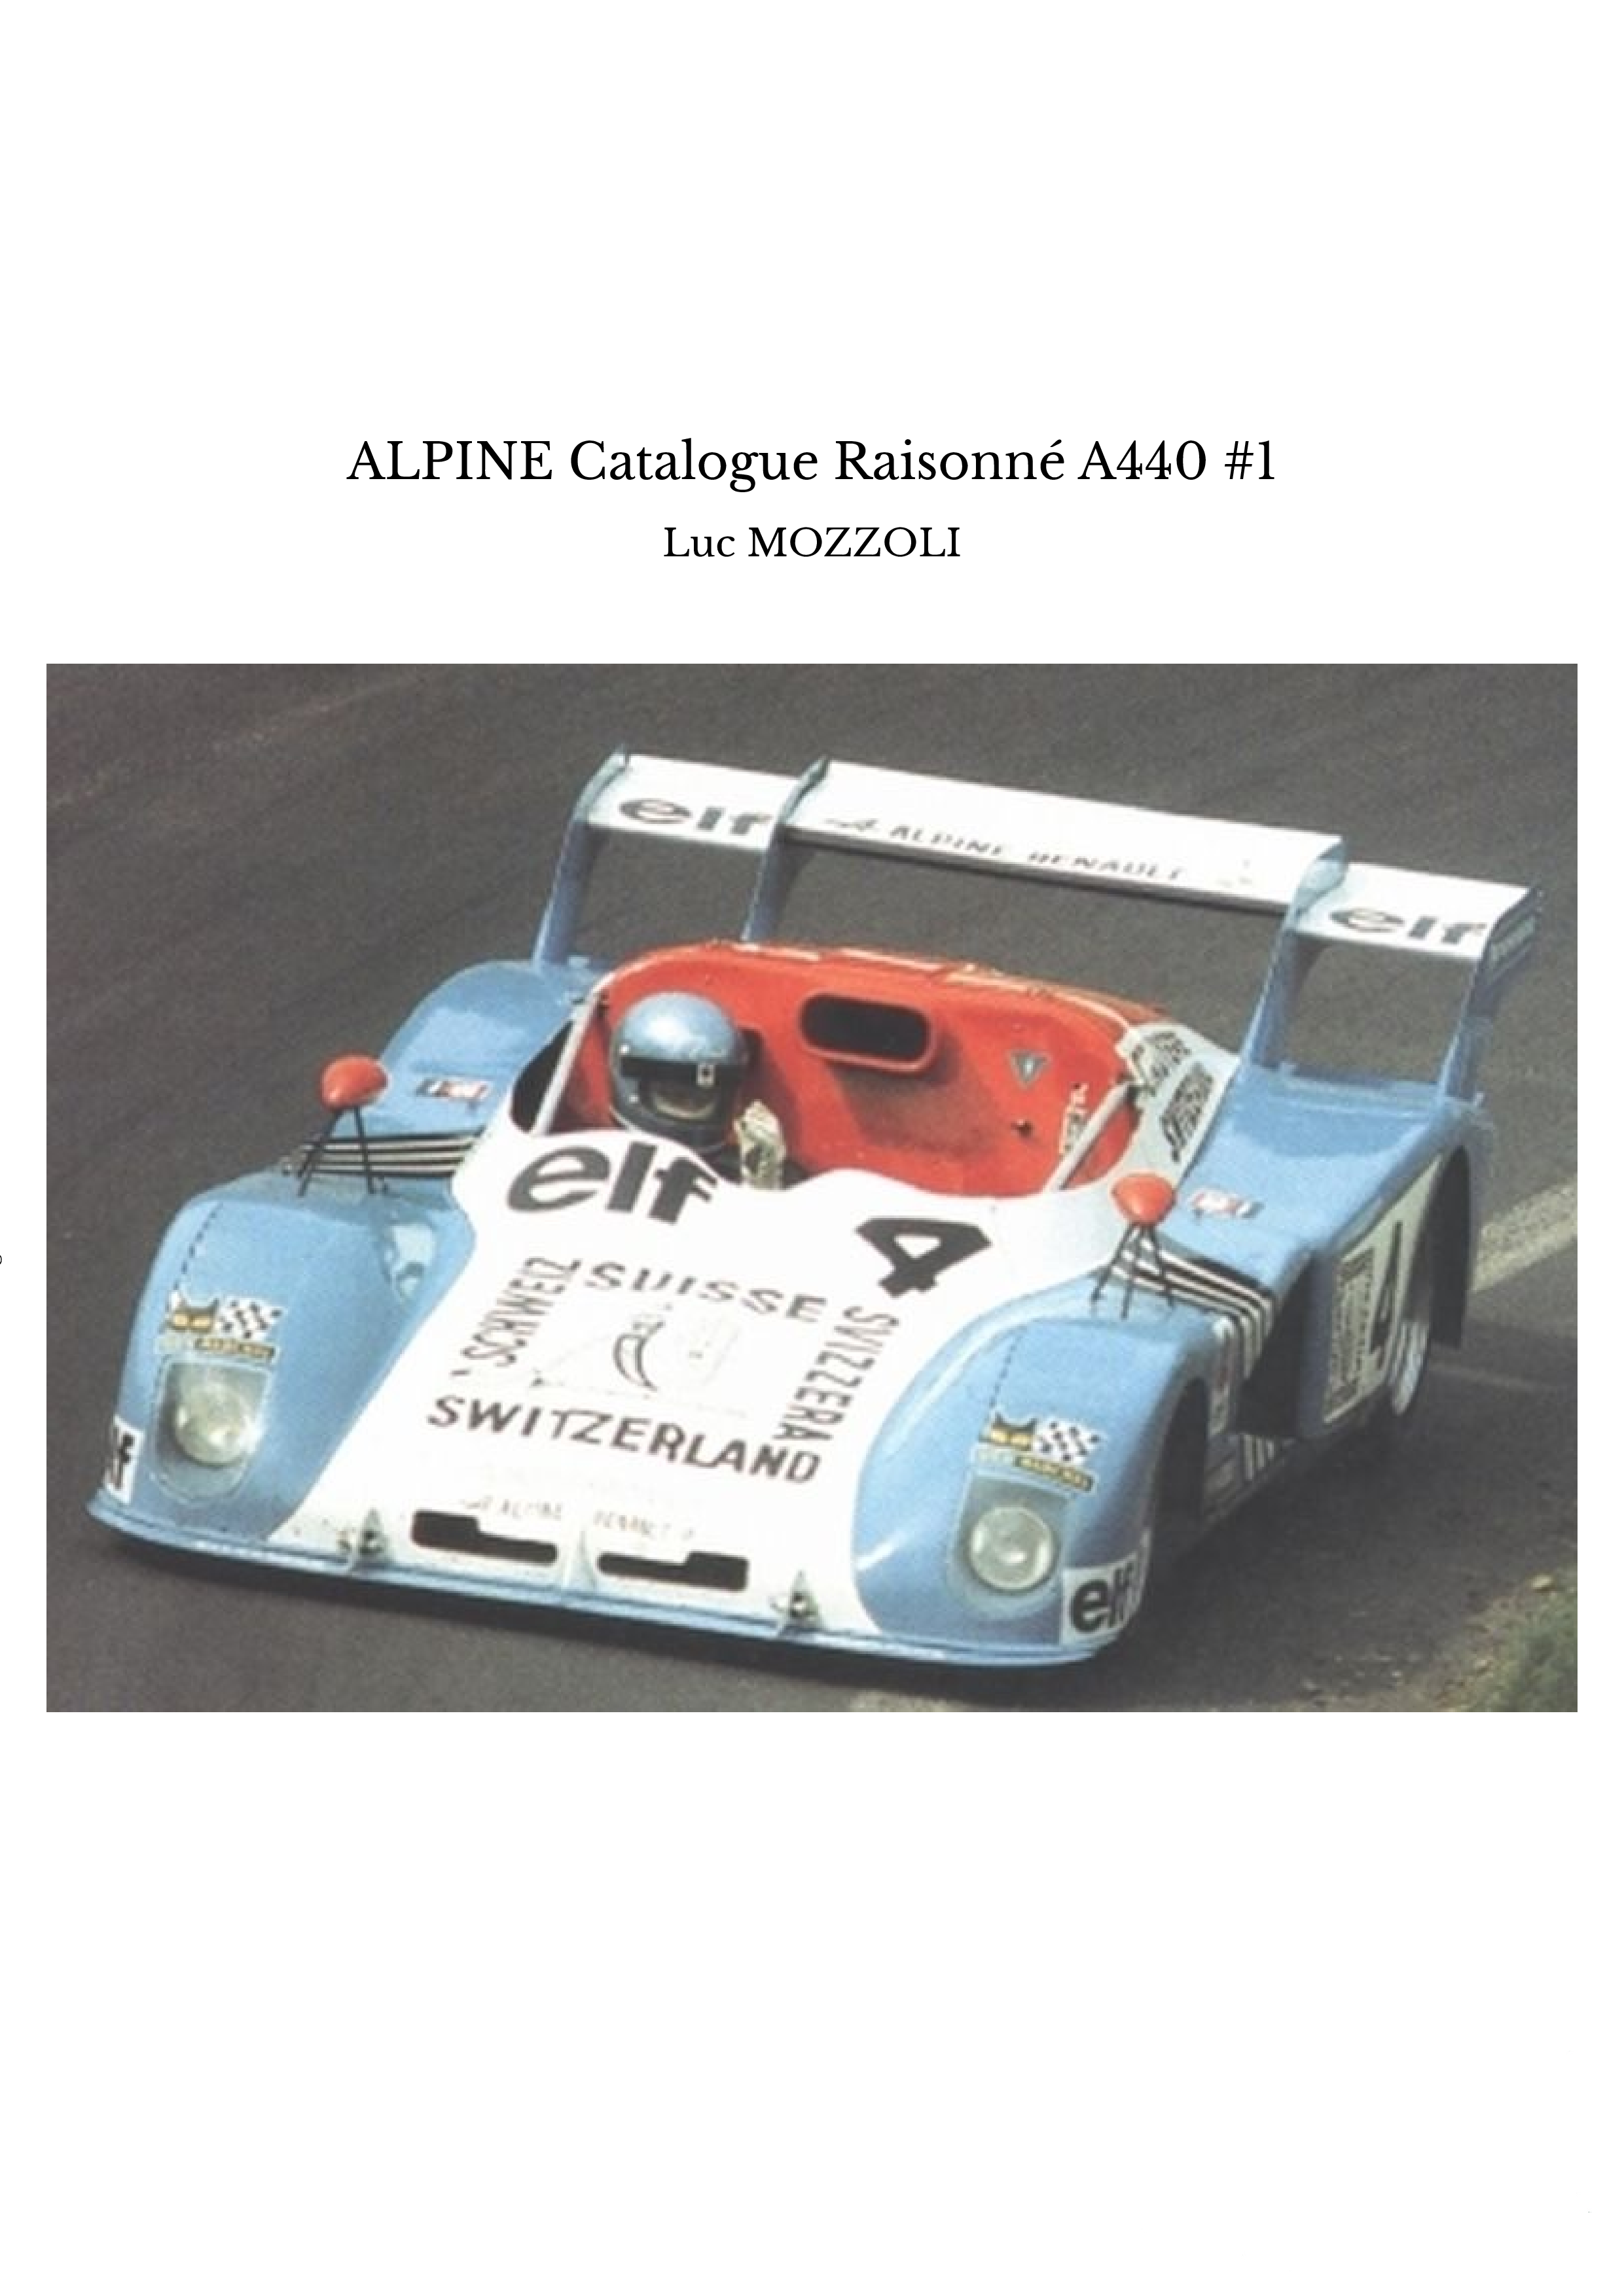 ALPINE Catalogue Raisonné A440 #1